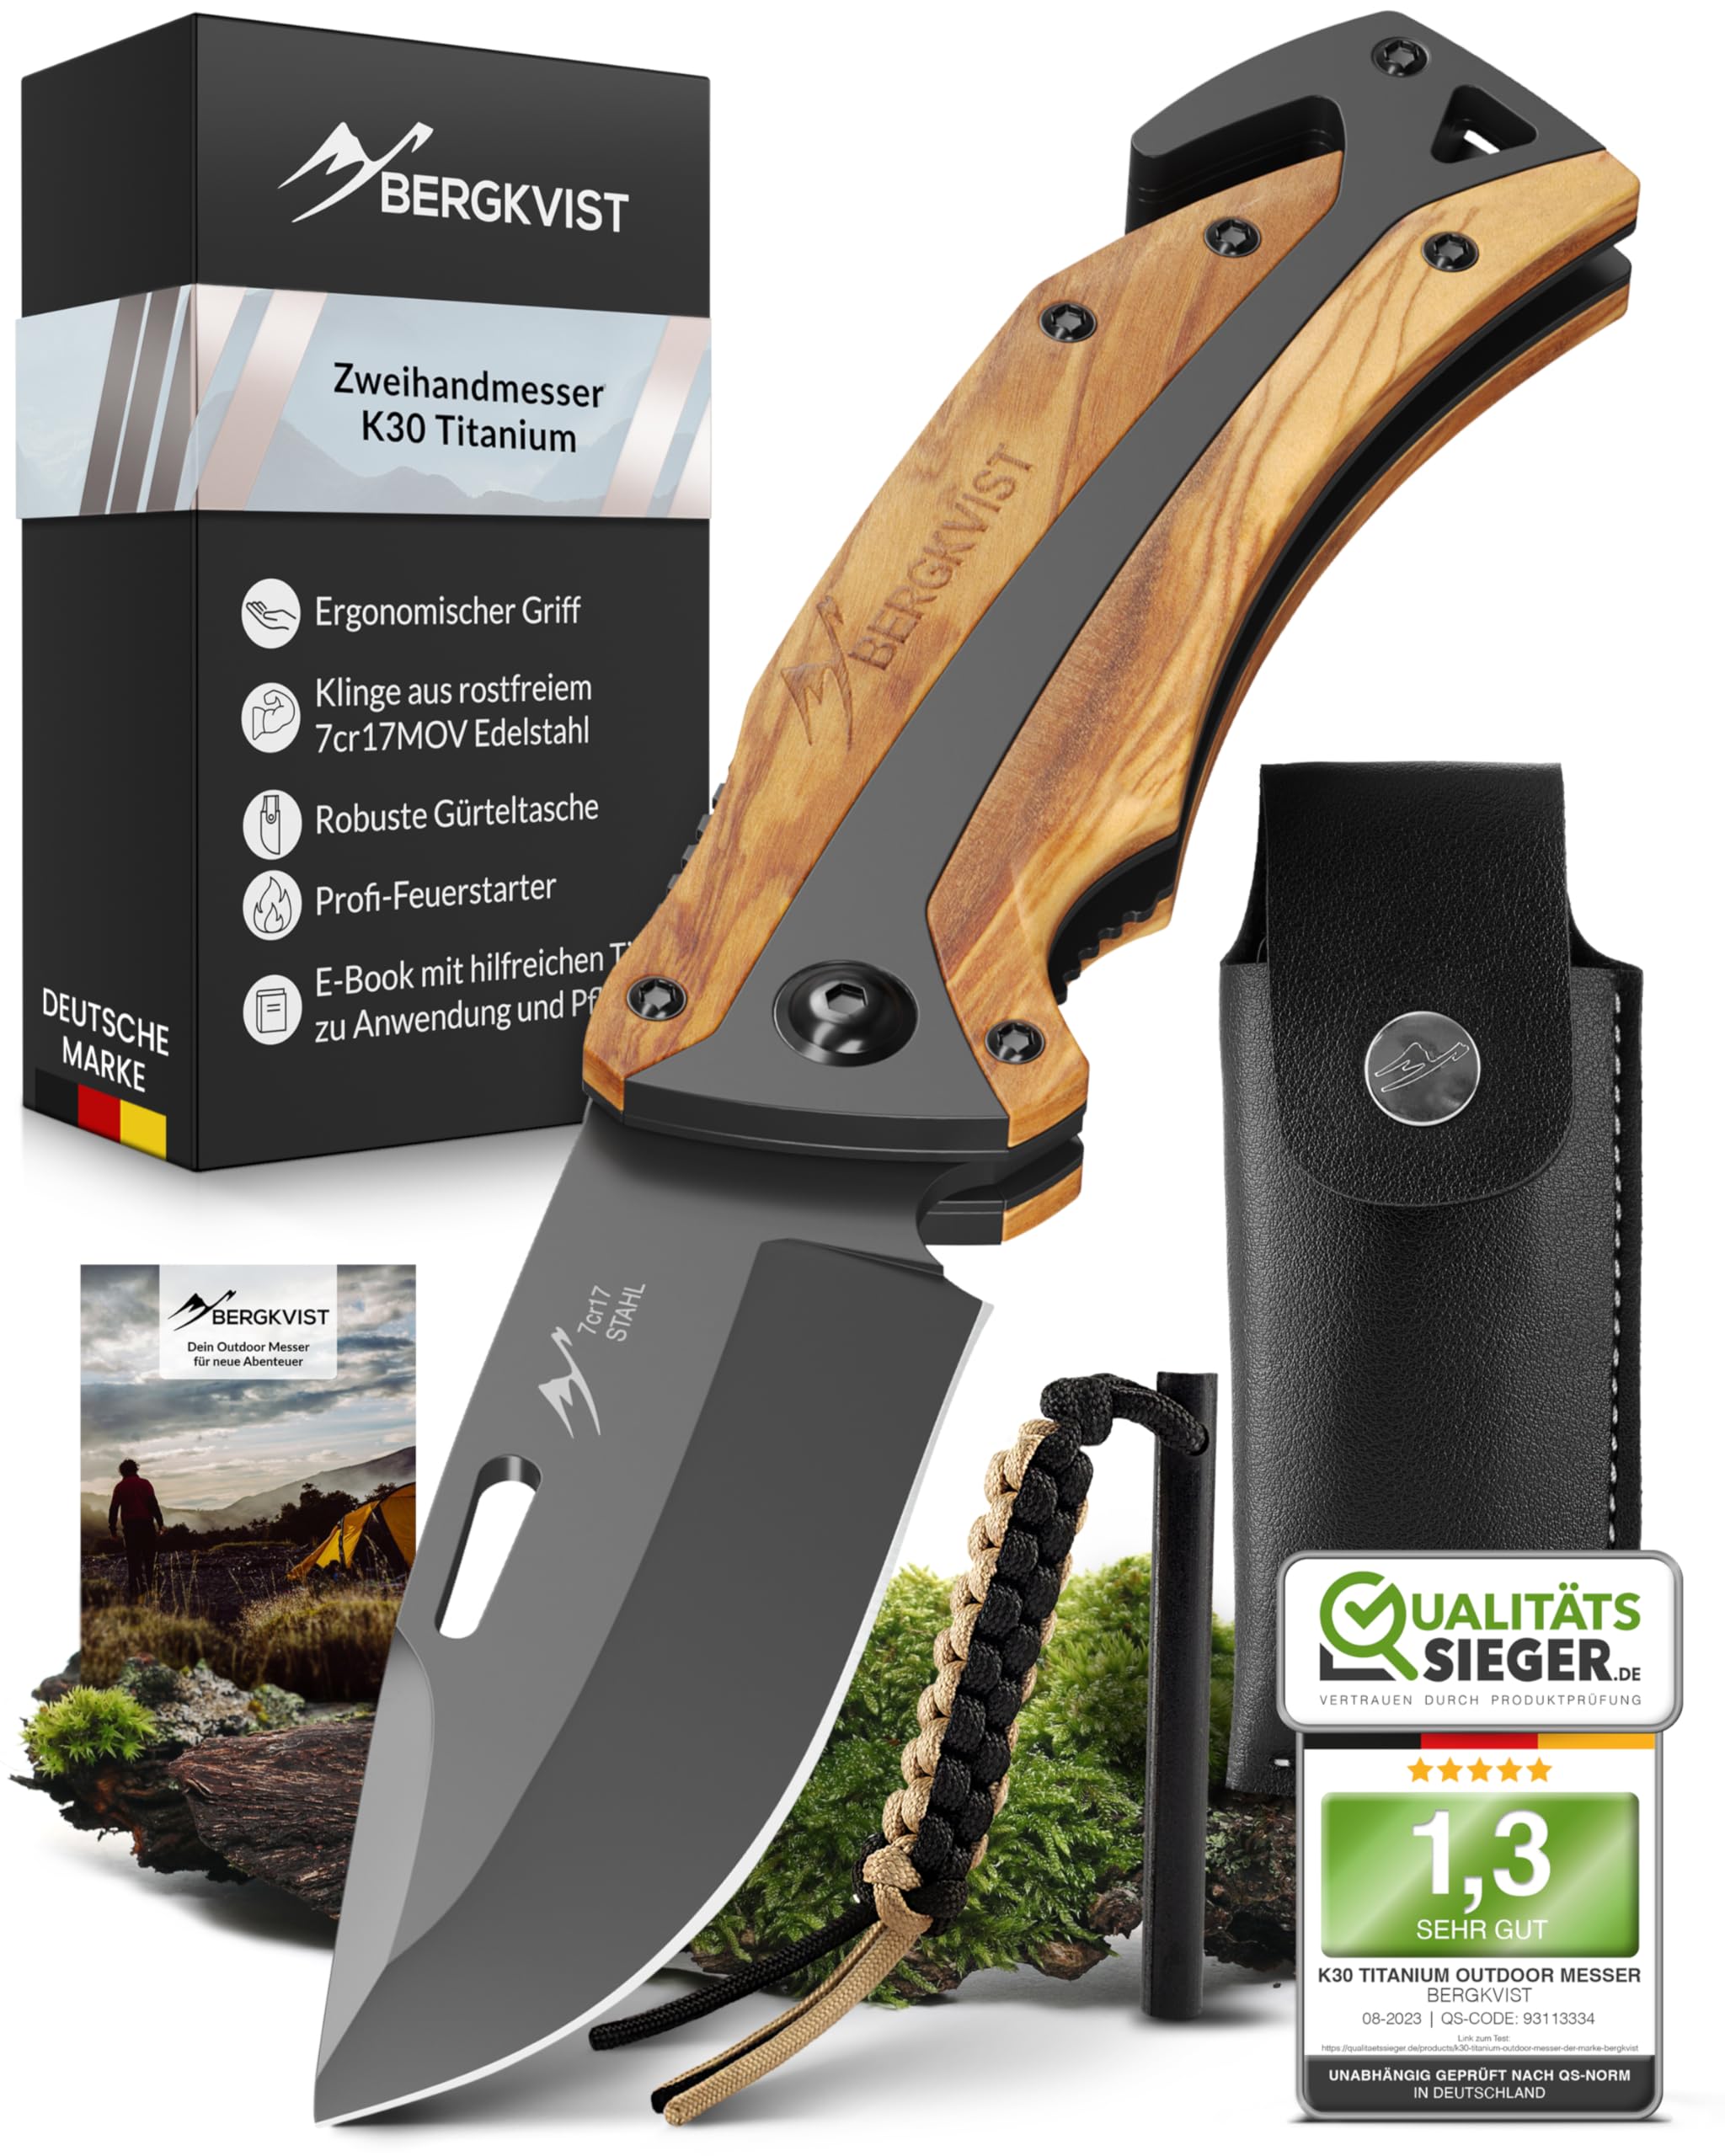 BERGKVIST® K30 Titanium Klappmesser (Zweihandmesser) - Mitführen in Deutschland erlaubt - 3-in-1 Taschenmesser für Outdoor, Camping & Survival mit Feuerstahl & Gürteltasche